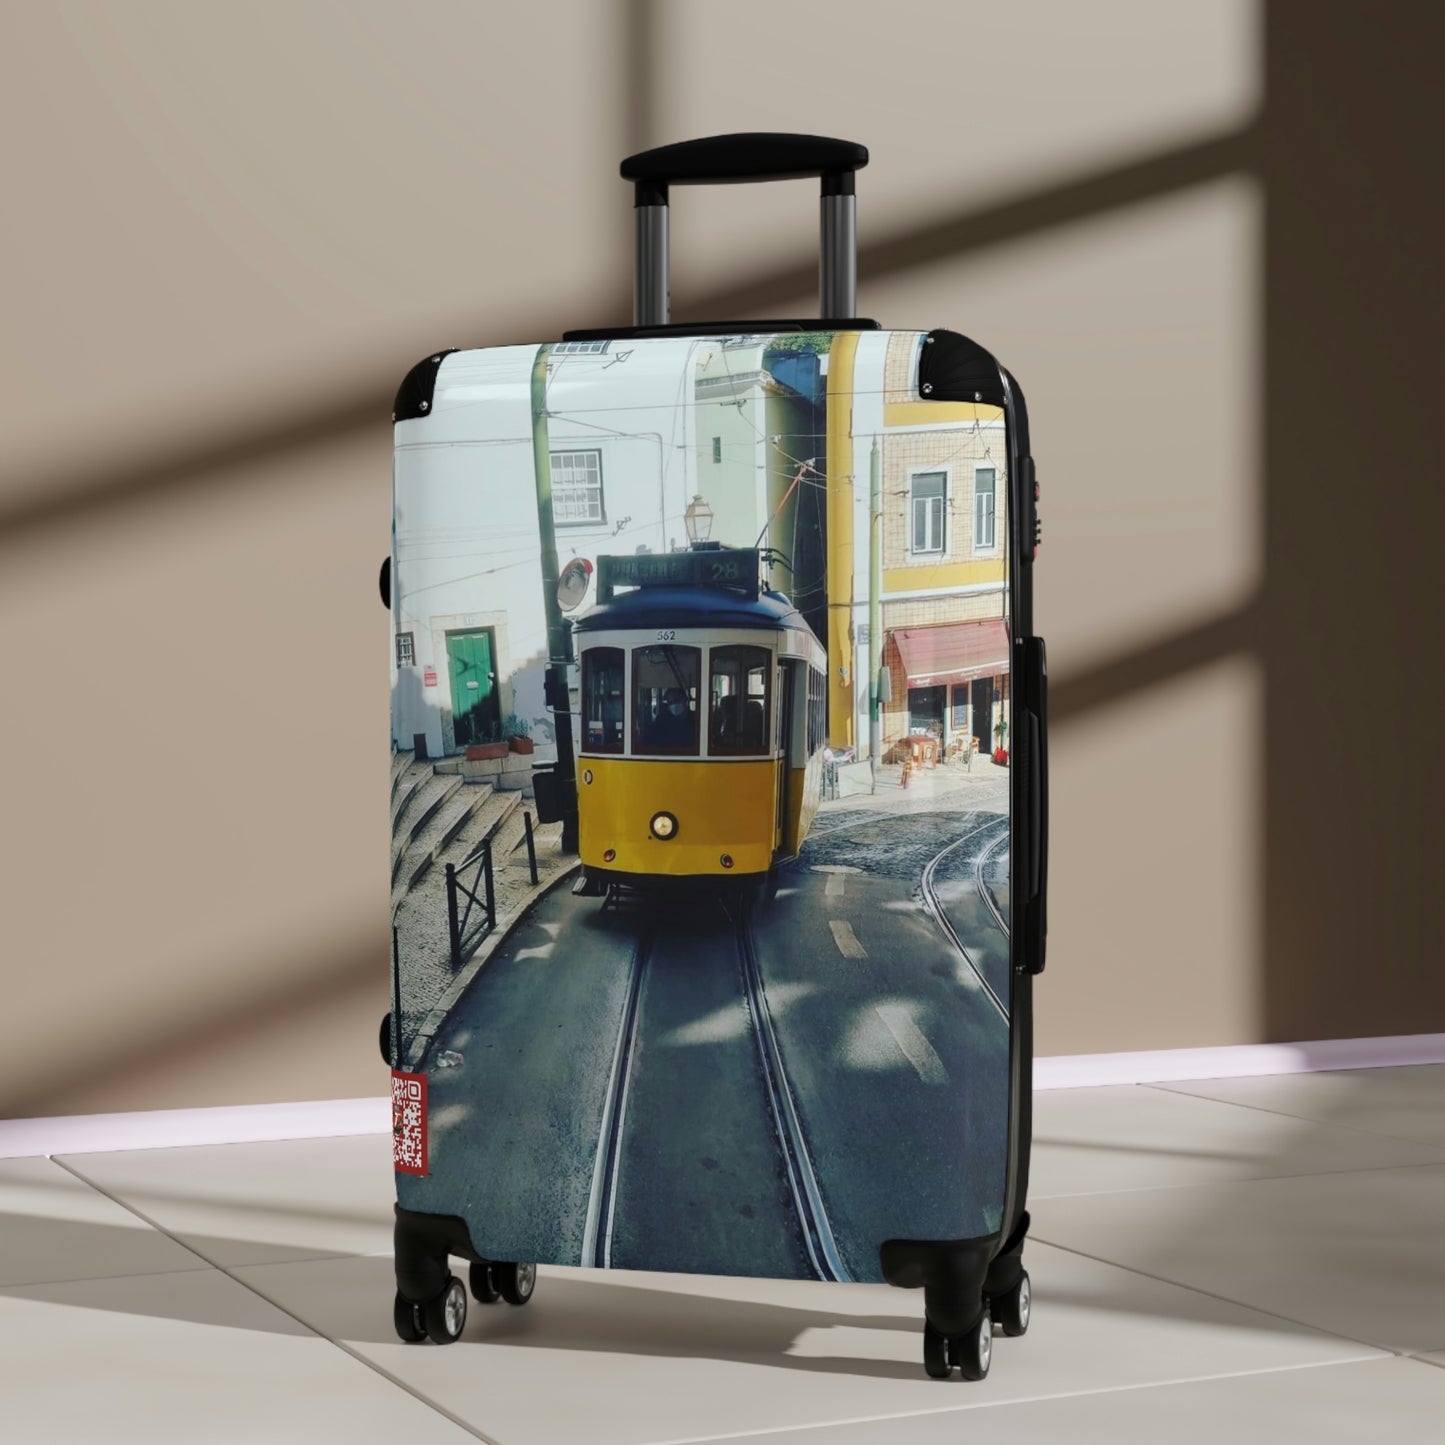 Remodelado Tram | Portugal | Suitcases